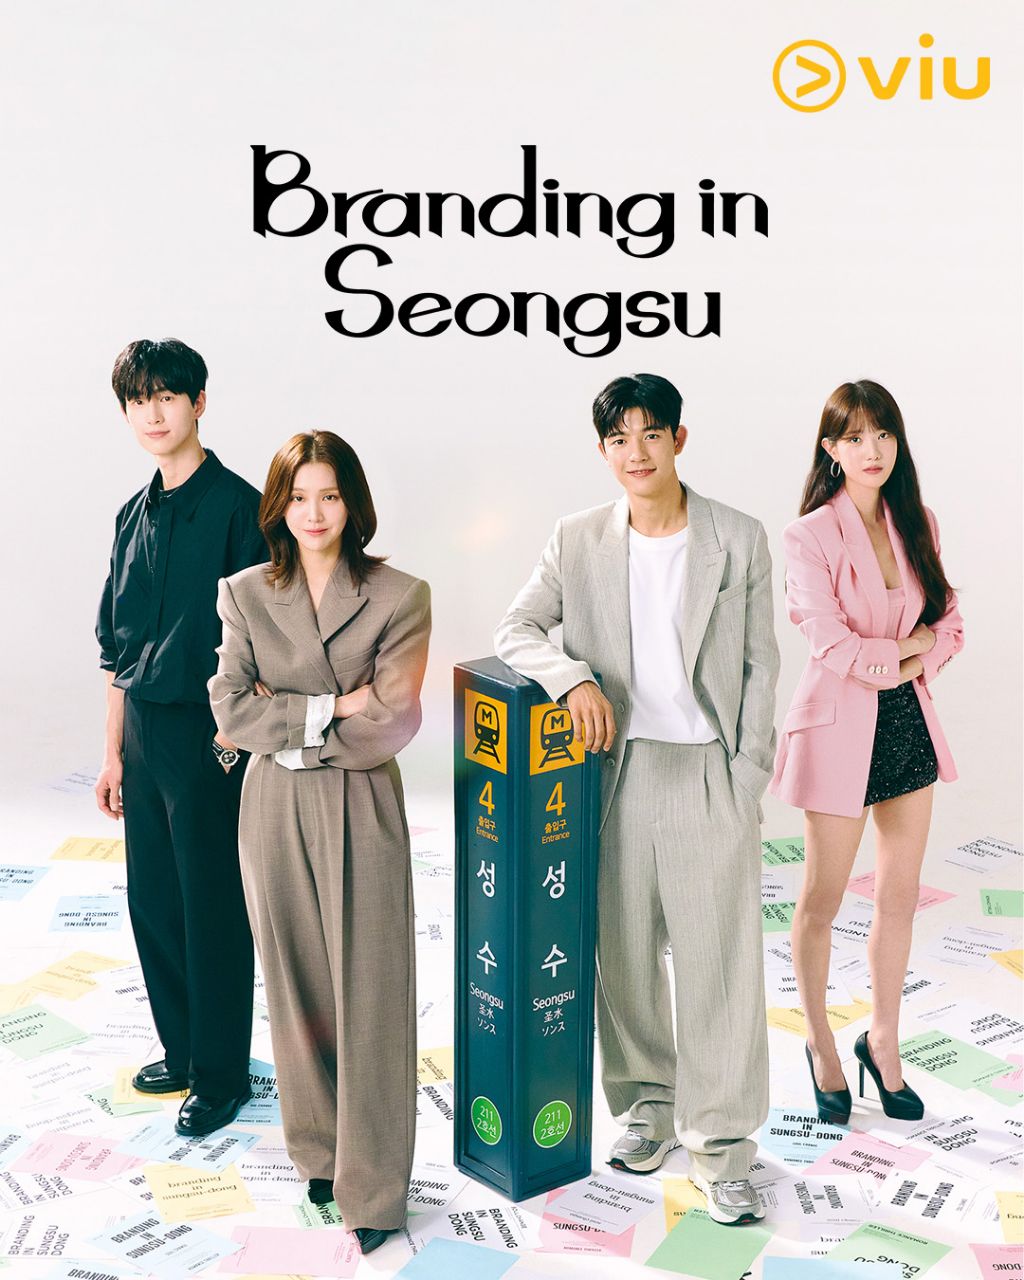 مسلسل العلامة التجارية في سيونغسو Branding in Seongsu الحلقة 23